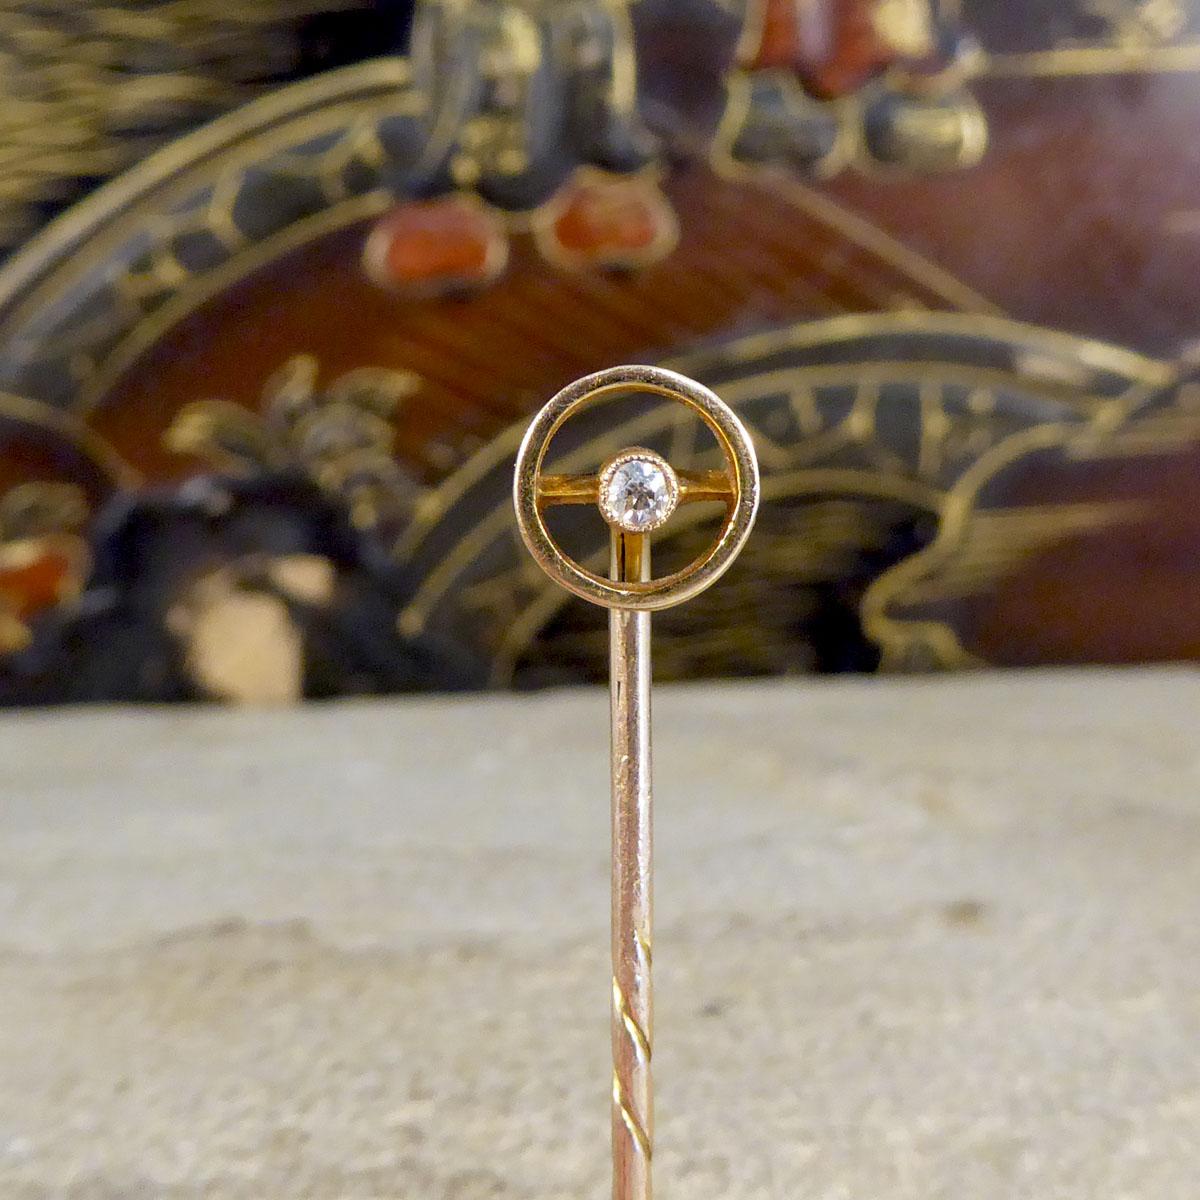 Diese wunderschöne antike Diamant-Anstecknadel wurde im viktorianischen Zeitalter von Hand gefertigt und zeigt, dass Qualitätsschmuck wirklich den Test der Zeit übersteht. Diese Anstecknadel ist vollständig aus 9 Karat Gelbgold mit einem Kreis und